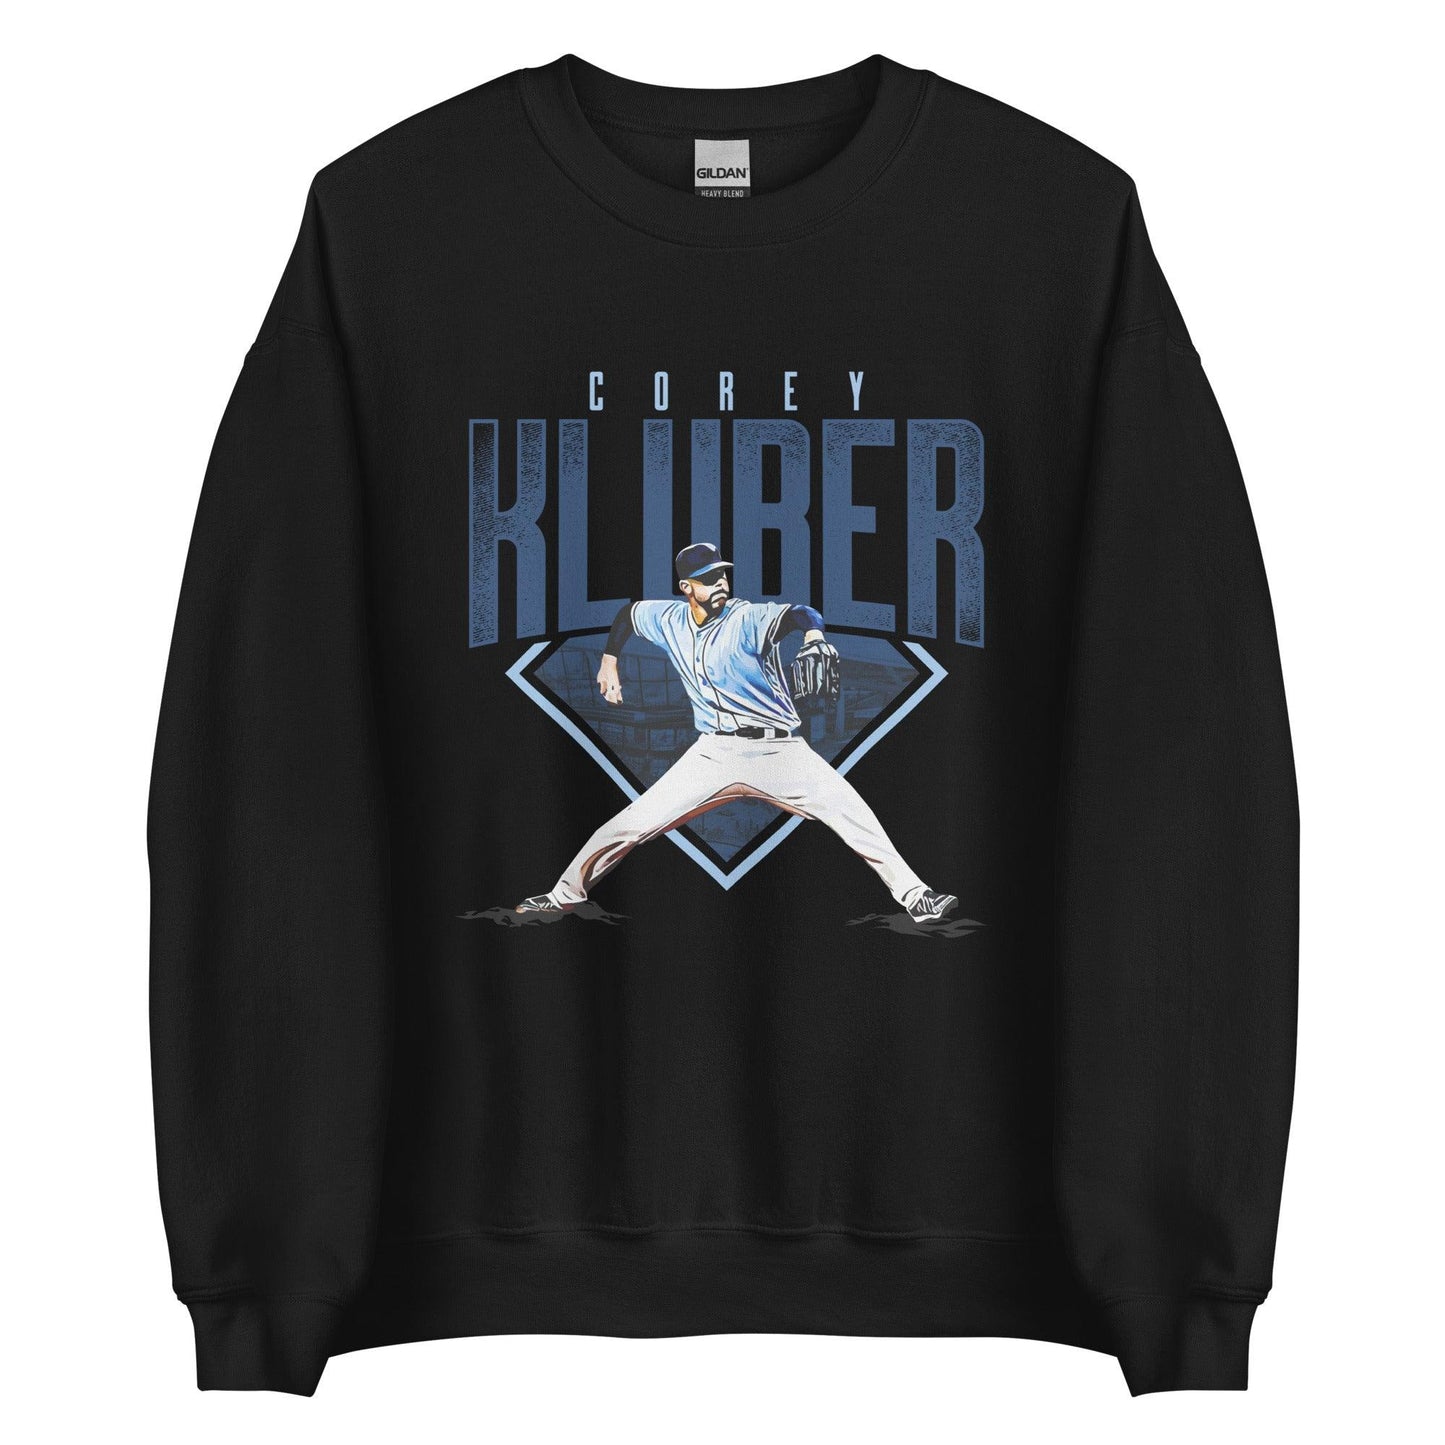 Corey Kluber "Ace" Sweatshirt - Fan Arch